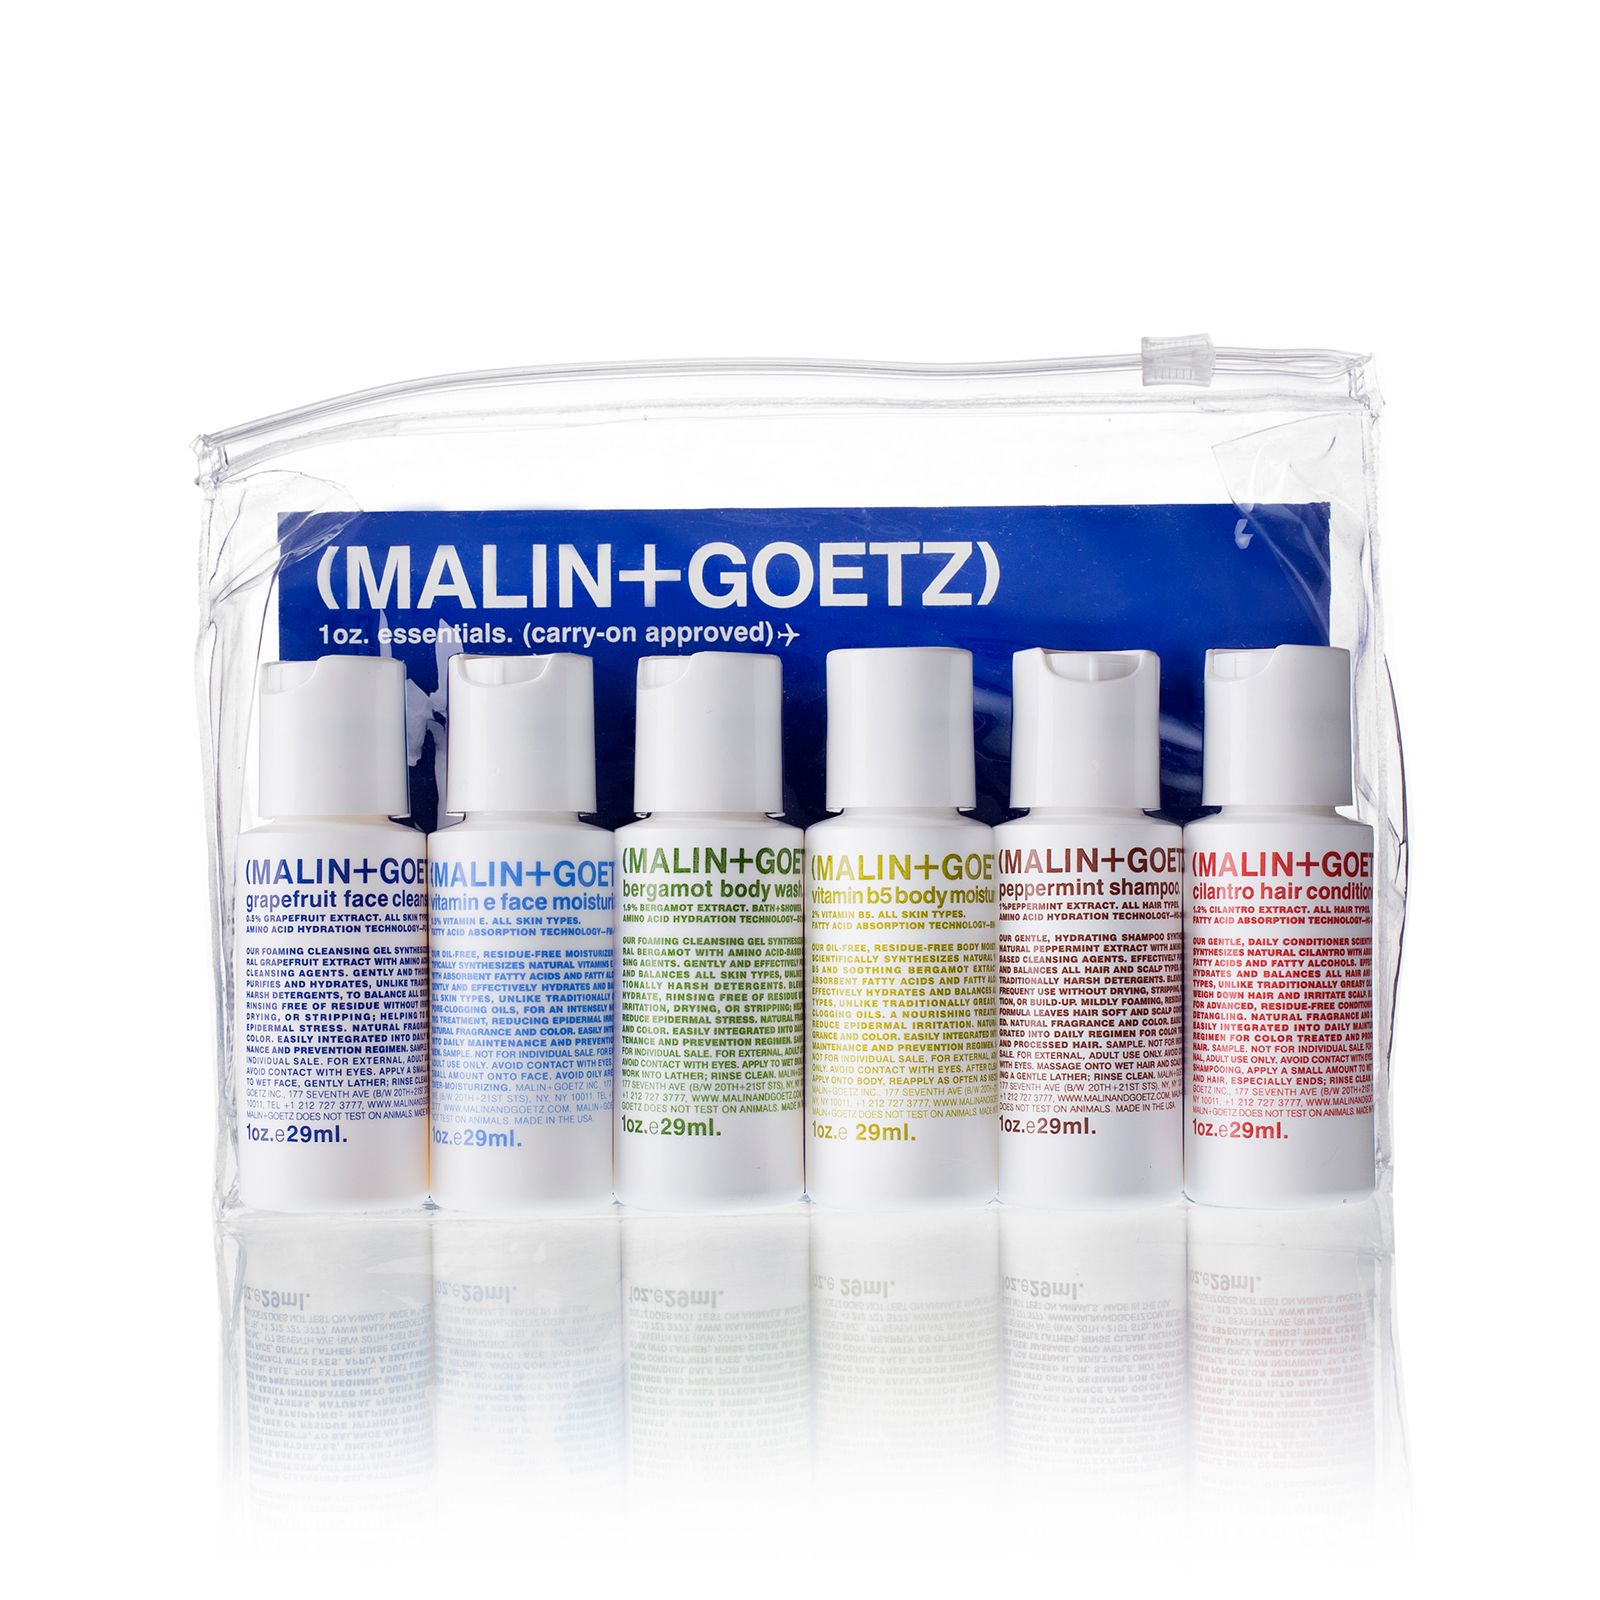 MALIN+GOETZ Essentials Kit